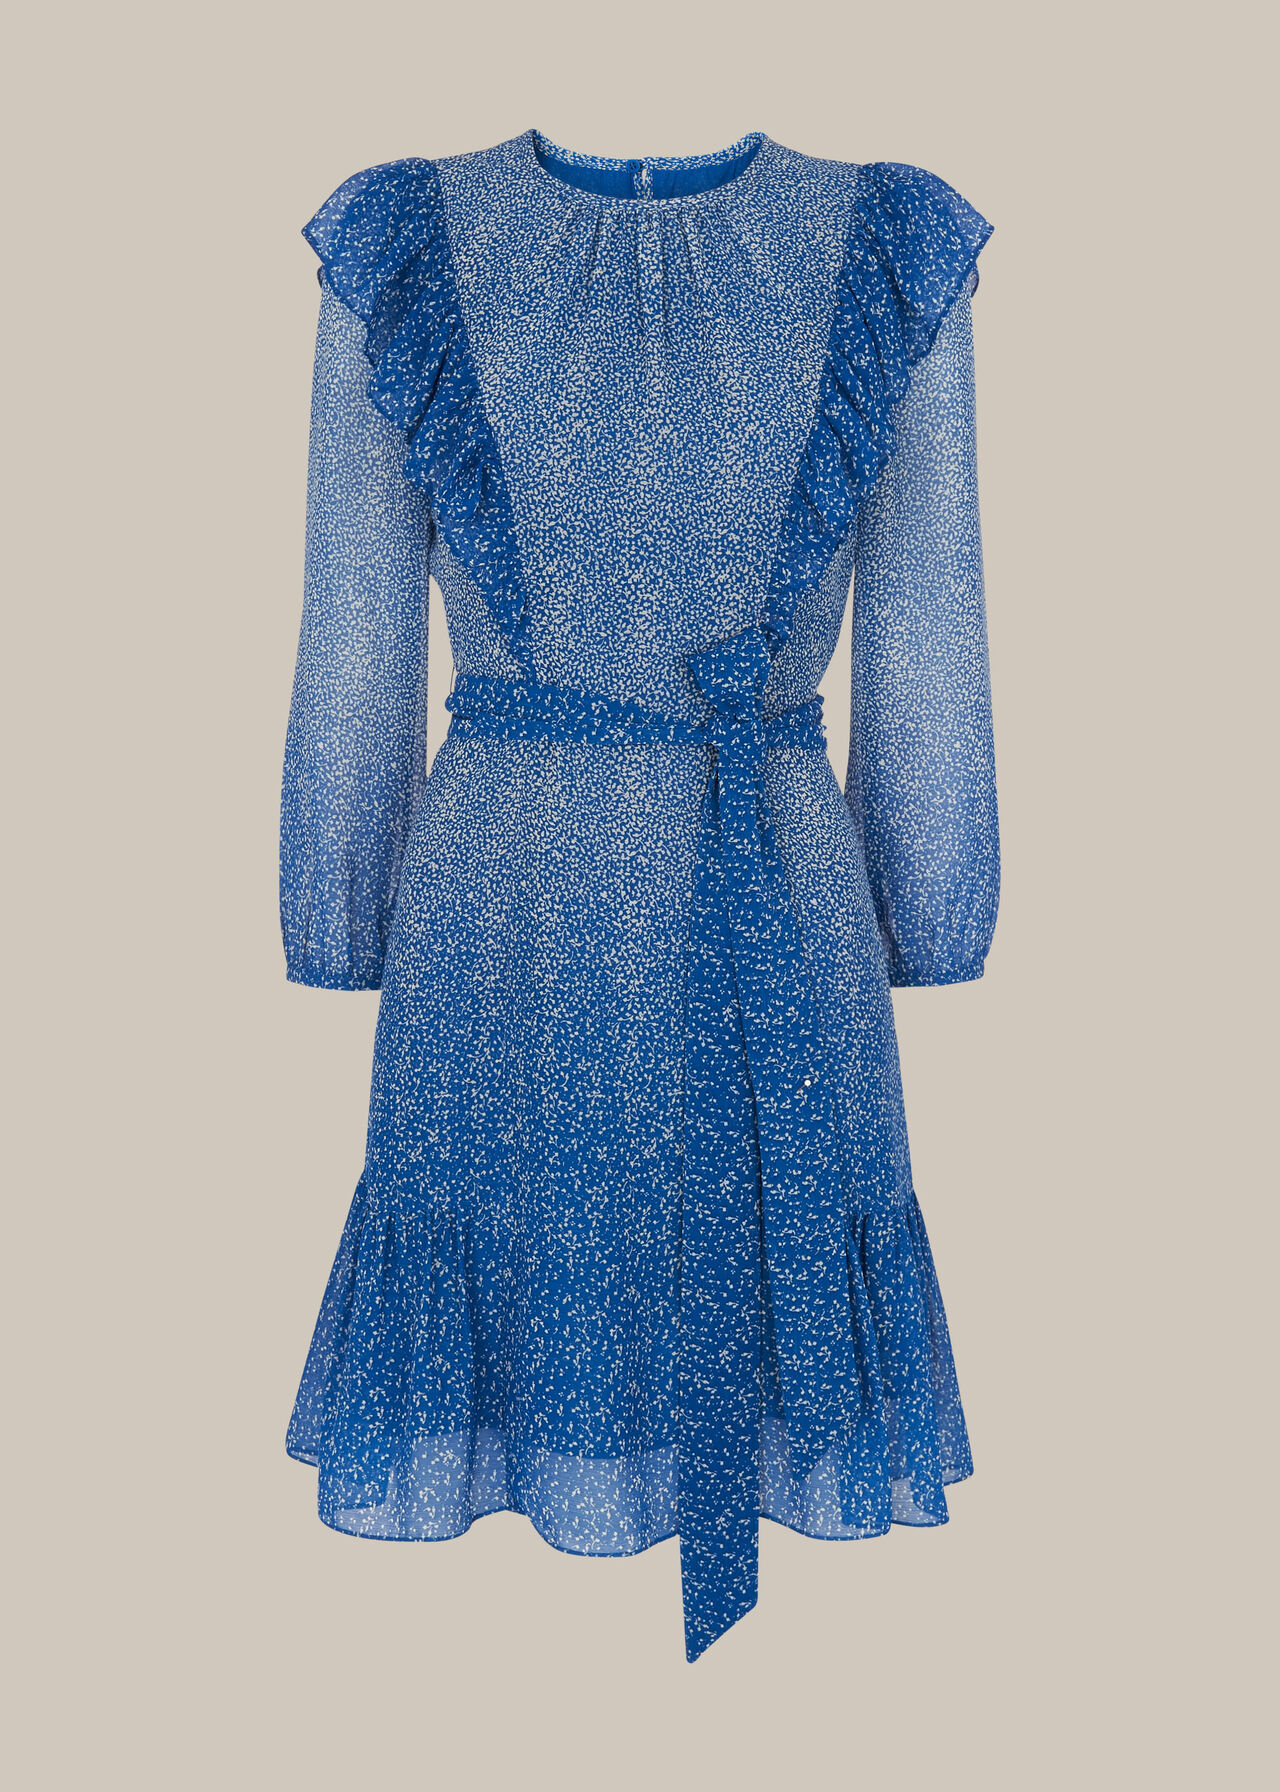 Floral Gradient Dress Blue/Multi